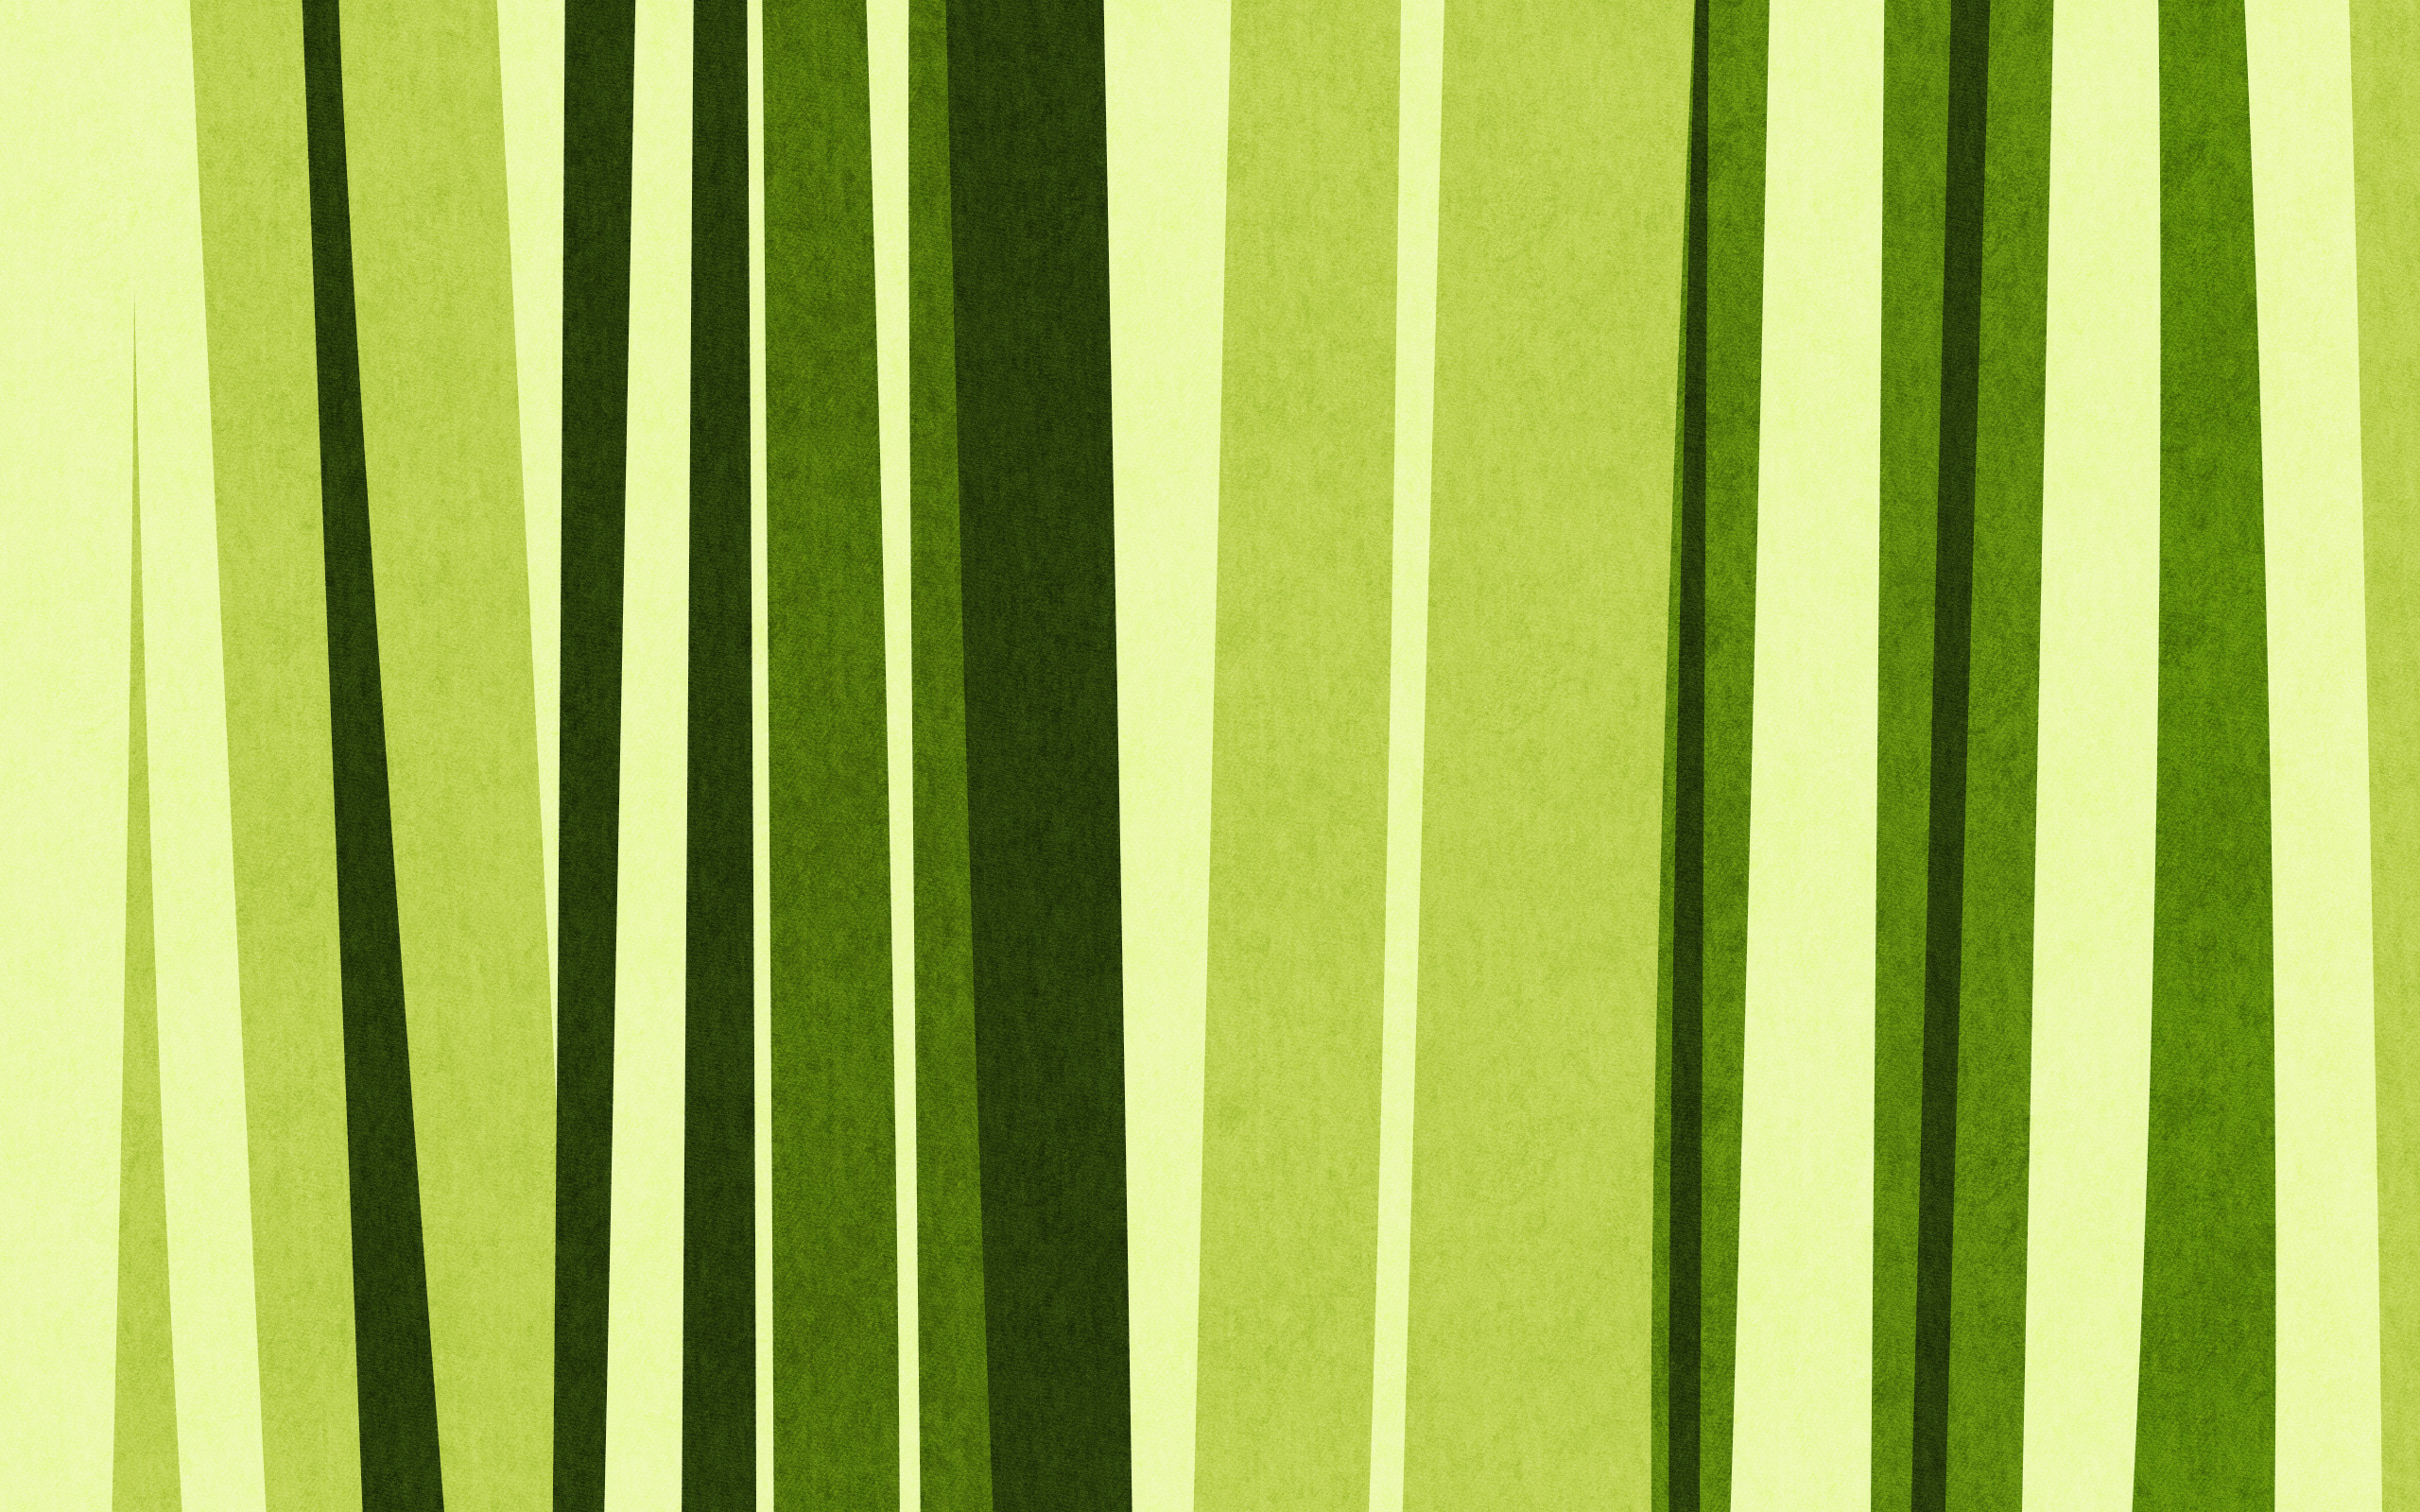 green bamboo, texture bamboo , green bamboo texture, photo, background